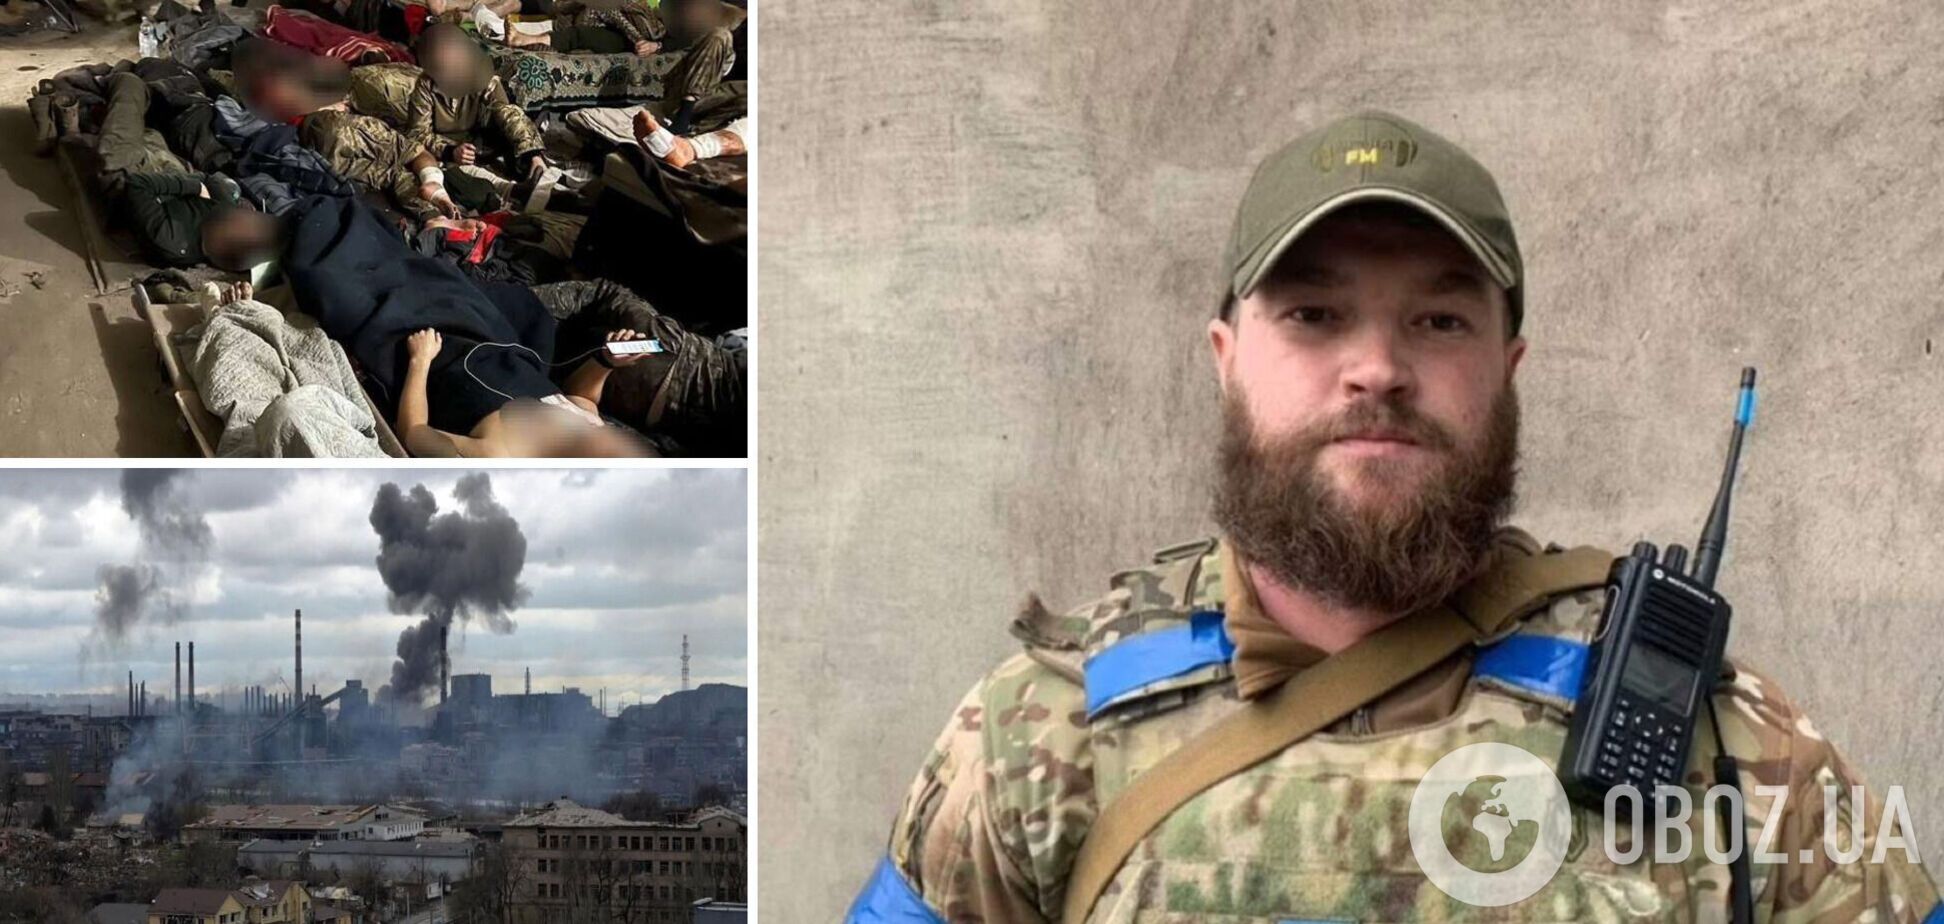 'Раненые умирают в страшных муках': замкомандира полка 'Азов' призвал спасти людей. Видео